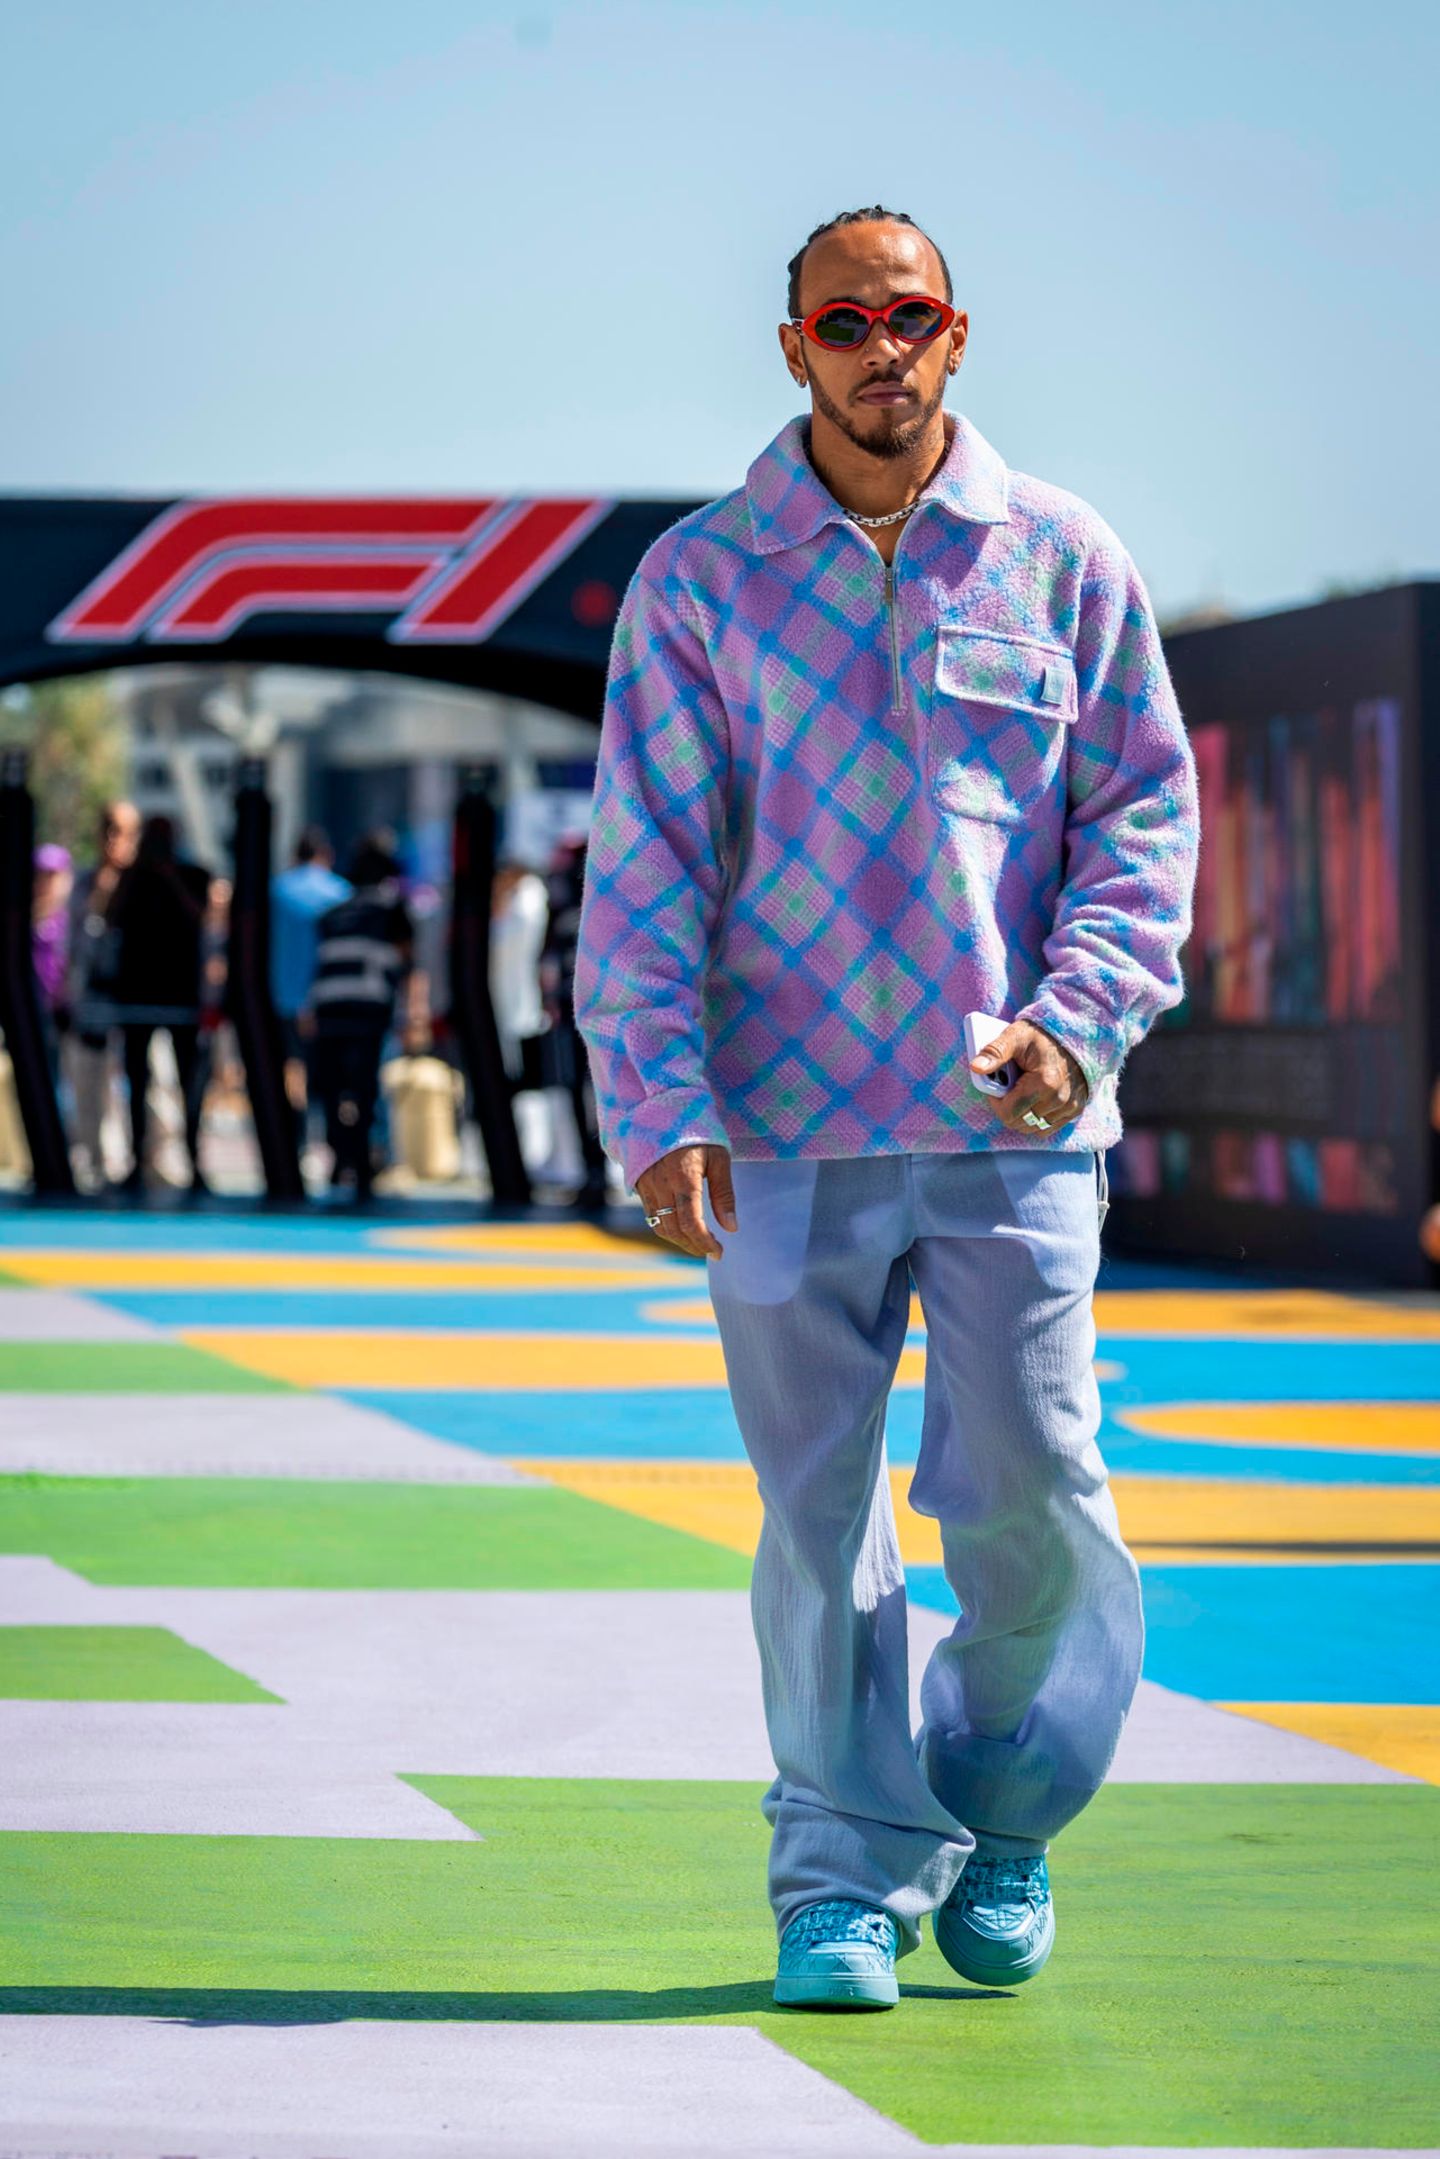 Bei diesem Look passt einfach alles – selbst der Boden! Beim Training für den Großen Preis von Saudi-Arabien zeigt sich Lewis Hamilton gewohnt stylisch. In einem karierten Dior-Esemble in pastelligem Lila läuft er auf dem ebenfalls pastelligen Teppich mit Schachbrettmuster und verwandelt ihn damit direkt zu seinem persönlichen Laufsteg.